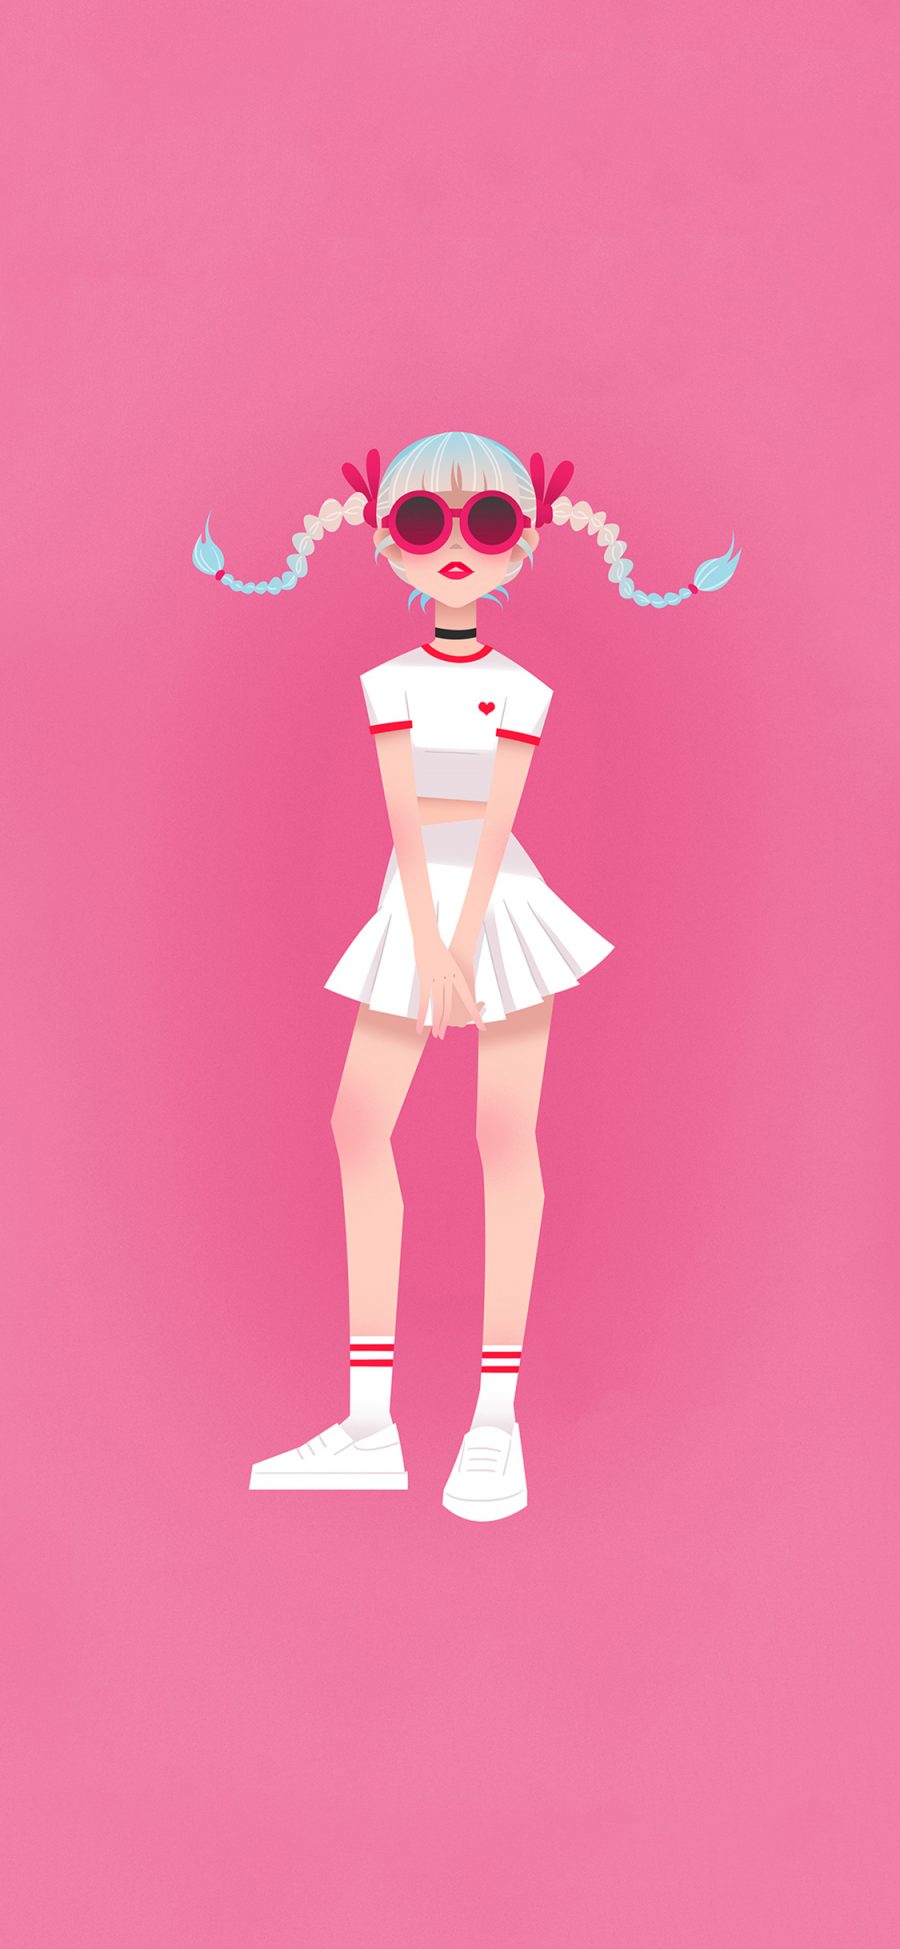 [2436×1125]粉色背景 动漫少女 青春 苹果手机动漫壁纸图片